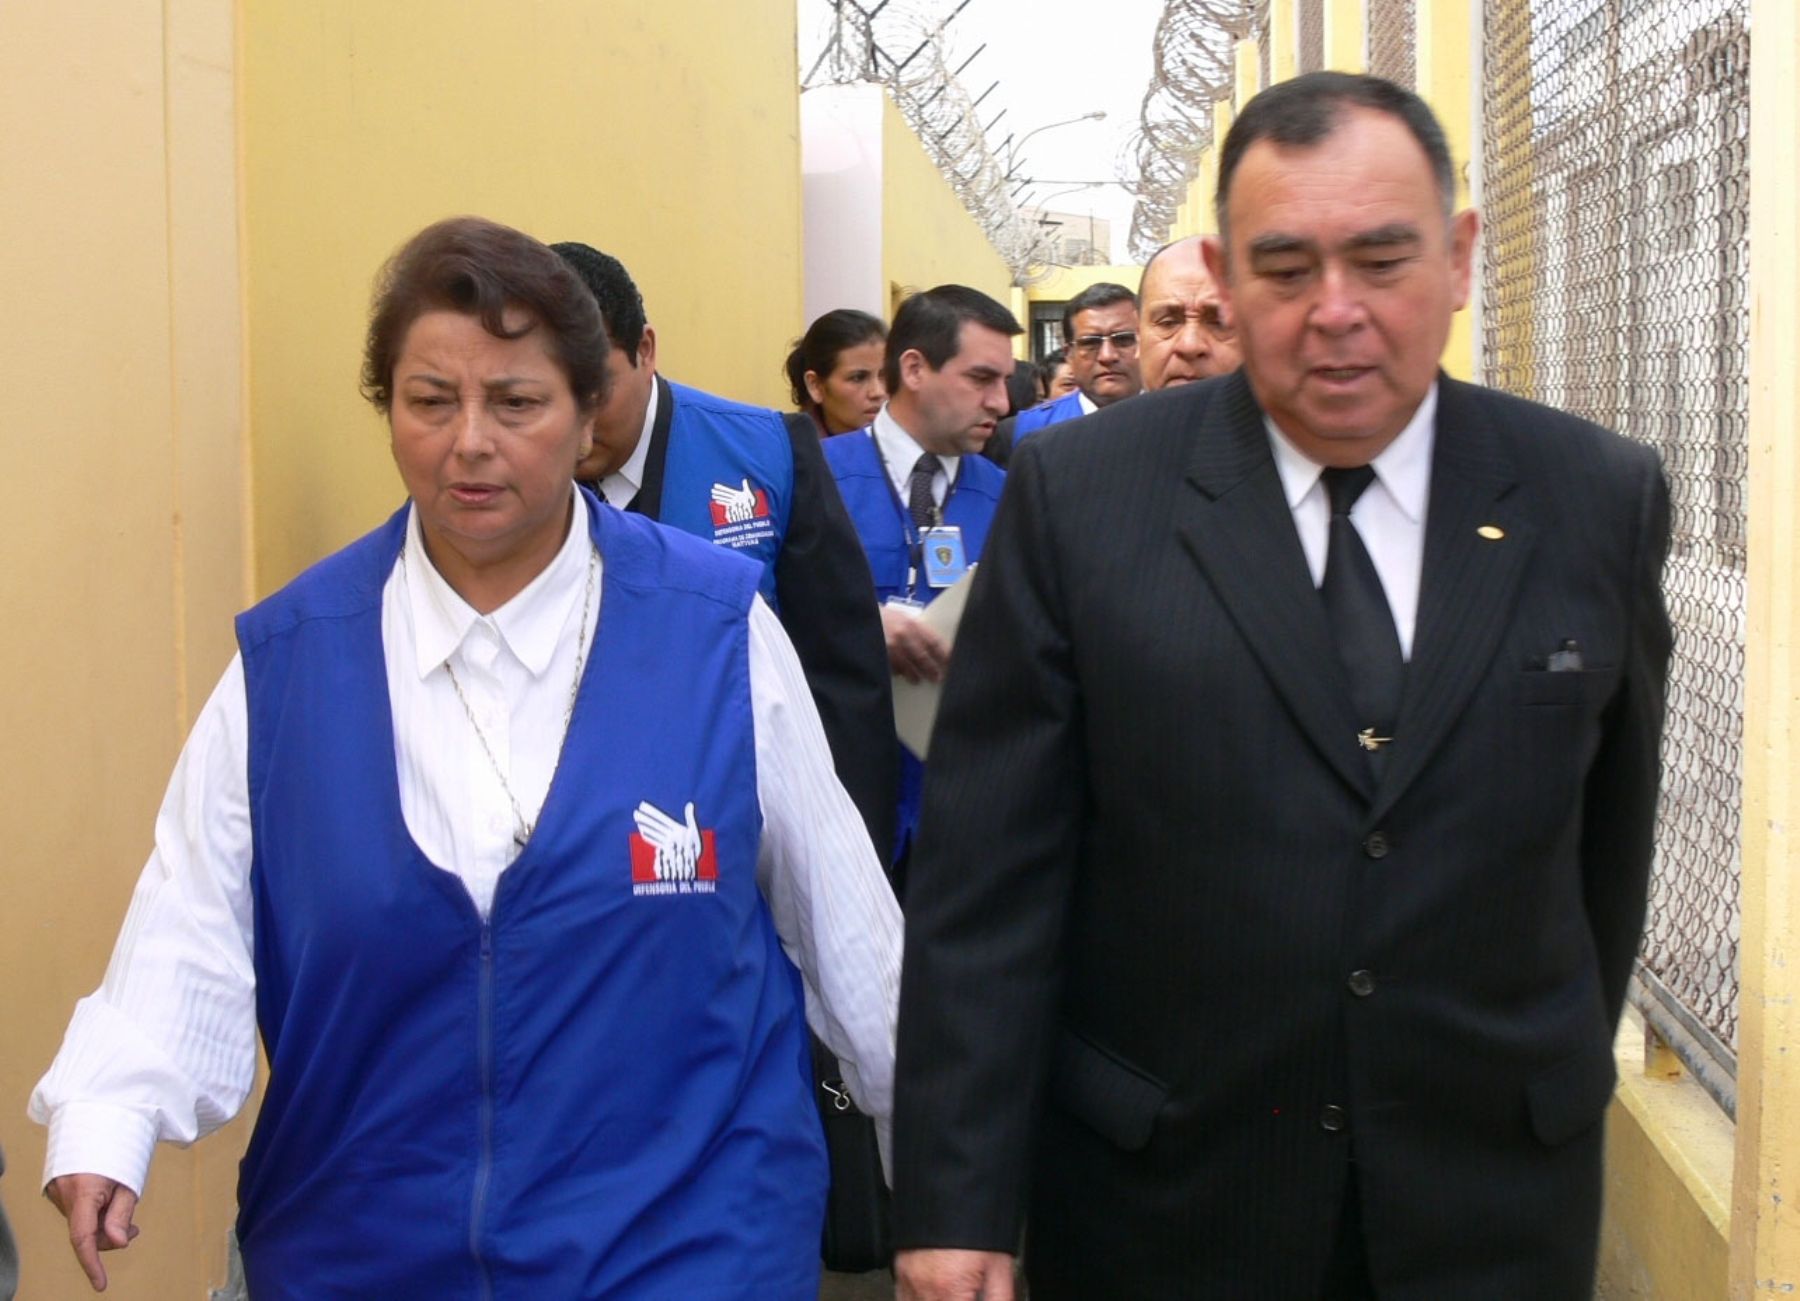 Defensora del Pueblo visita penal Sarita Colonia del Callao junto a presidente del INPE, Rubén Rodríguez Rabanal. Foto: Defensoría del Pueblo